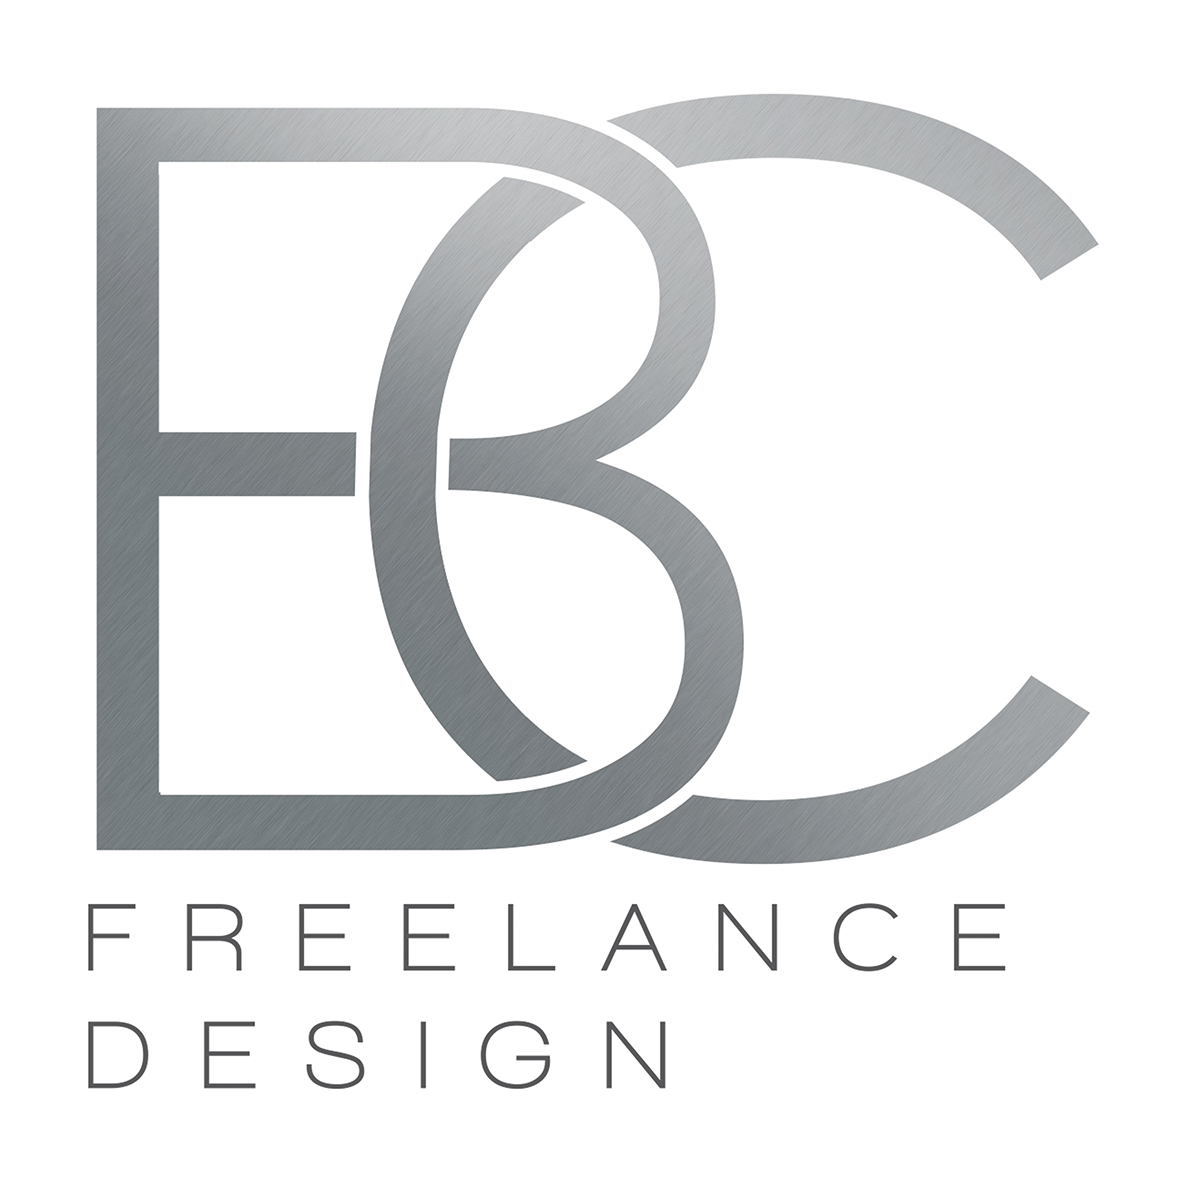 BC freelance design - Accommodation Mooloolaba